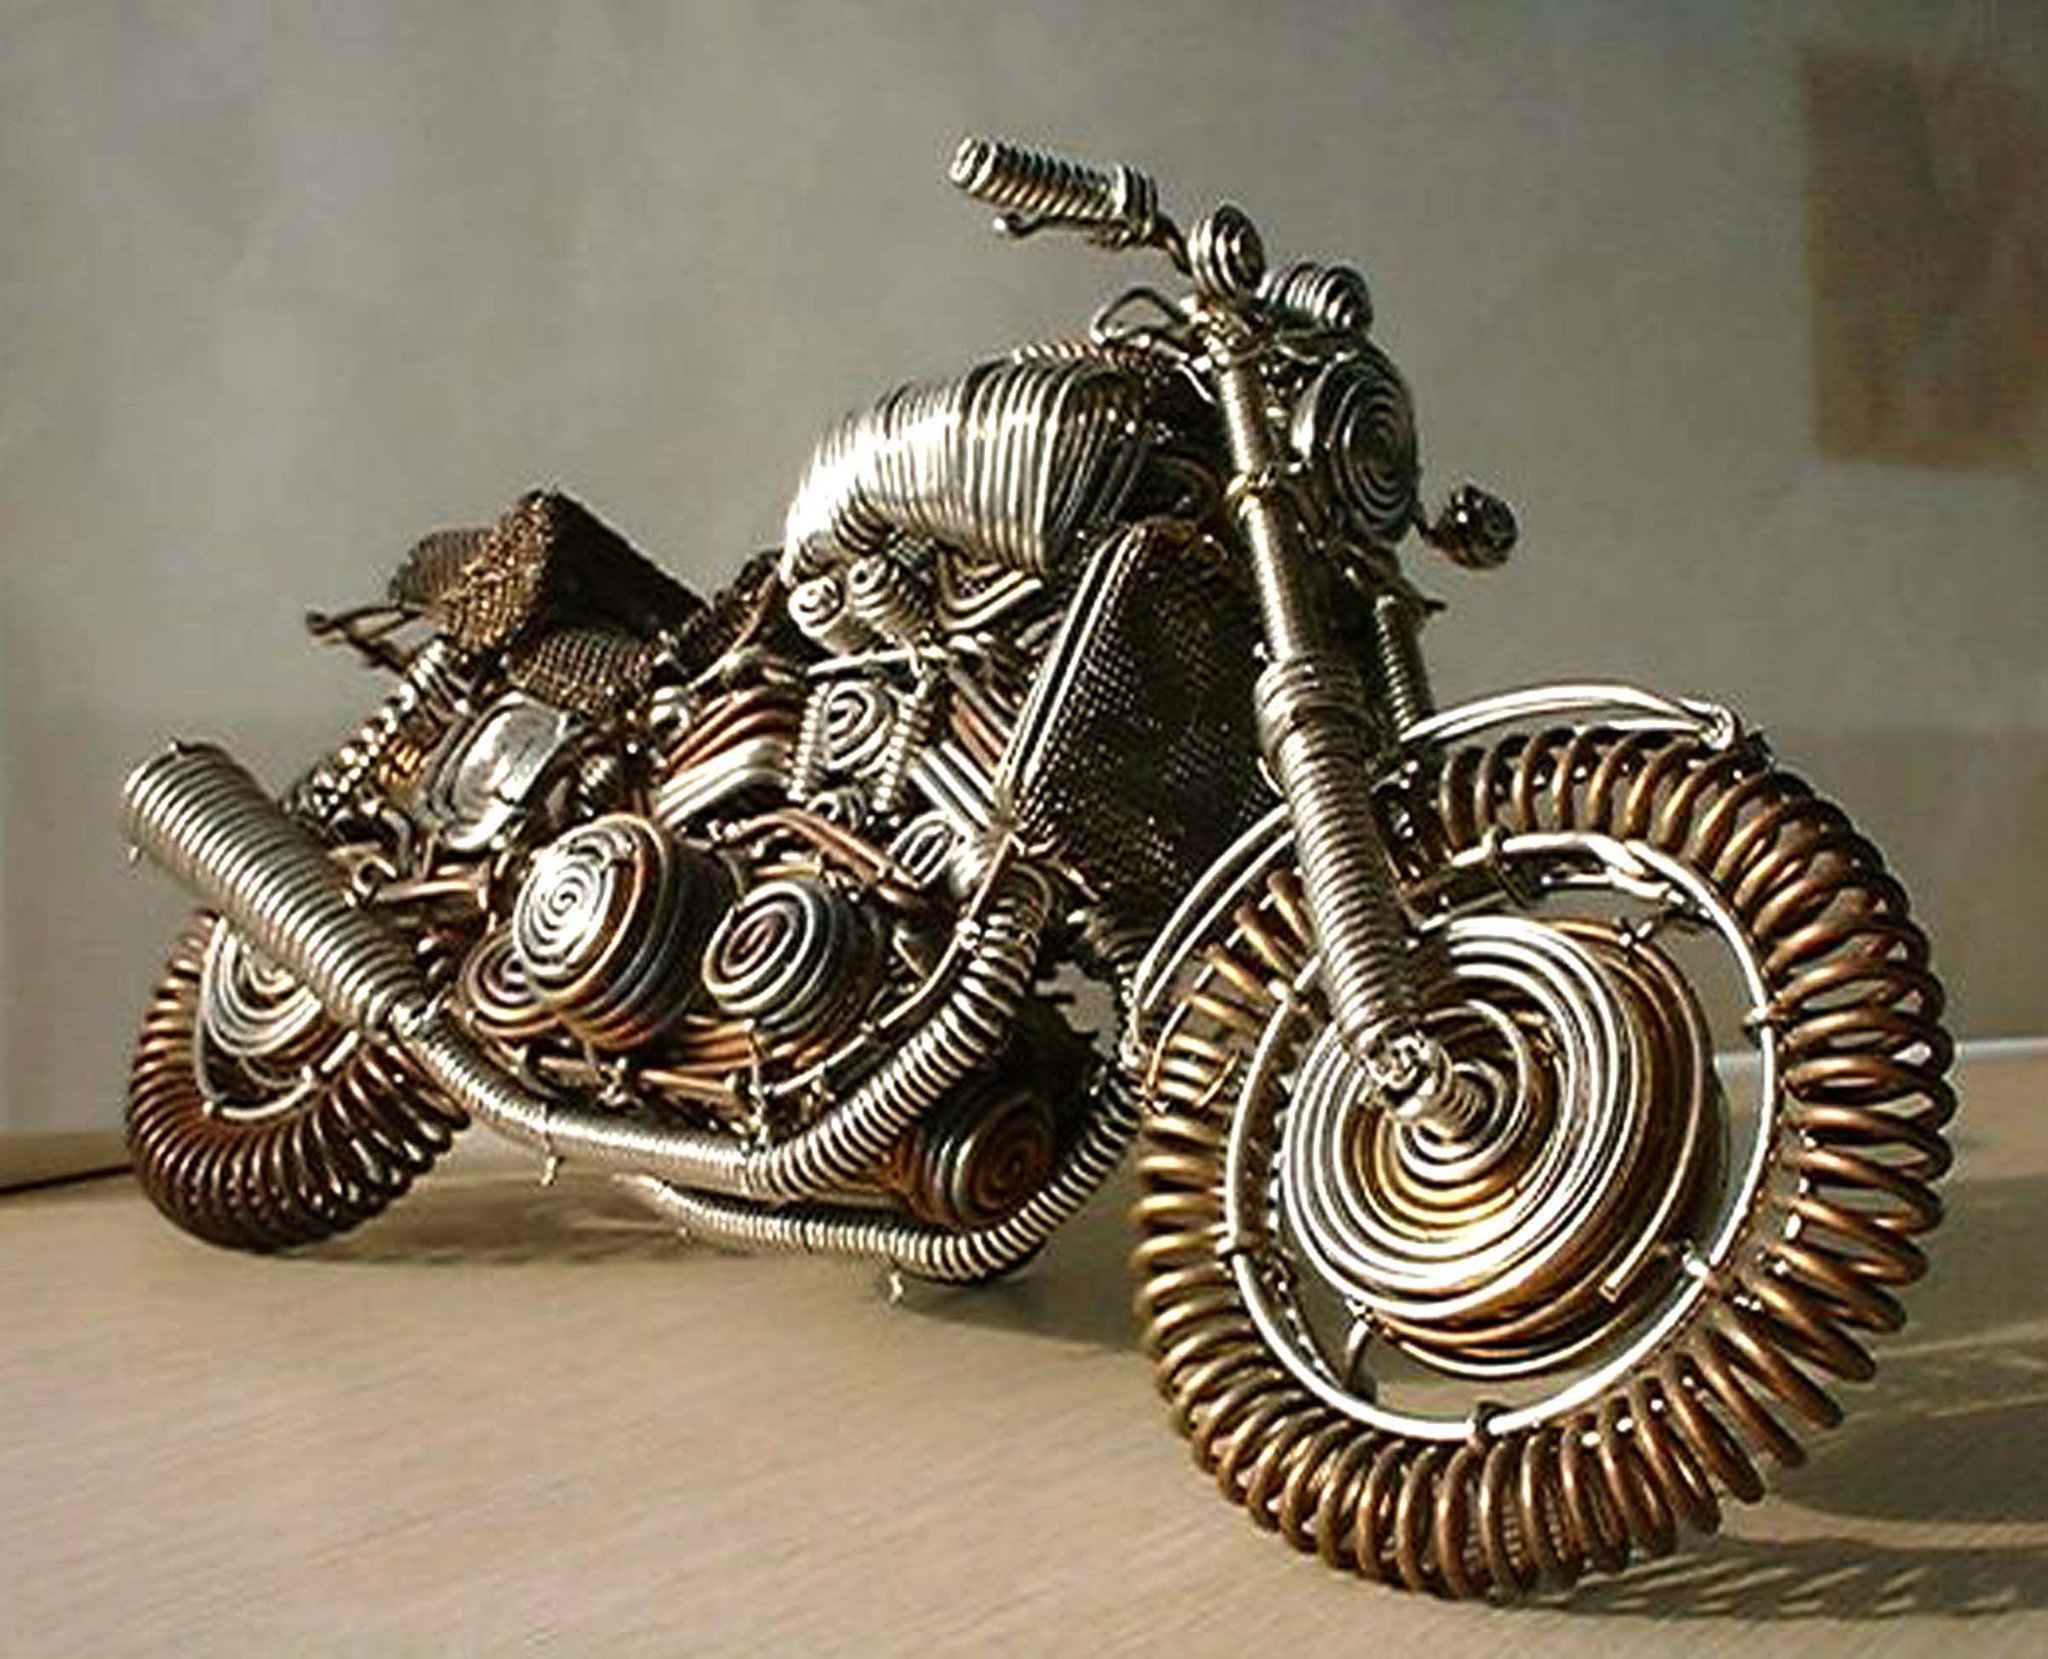 Сувенирный металл. Мотоцикл из металла. Необычные изделия из металла. Поделки из металла. Модельки мотоциклов из металла.